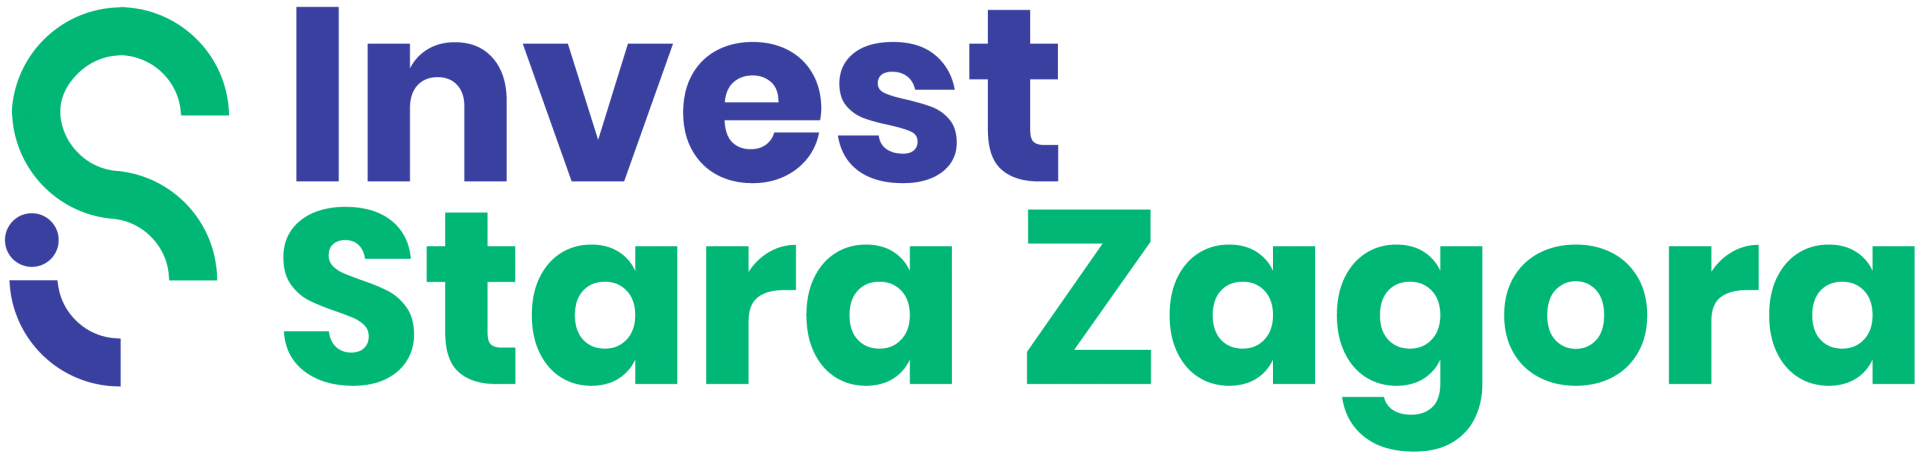 Invest Stara Zagora logo